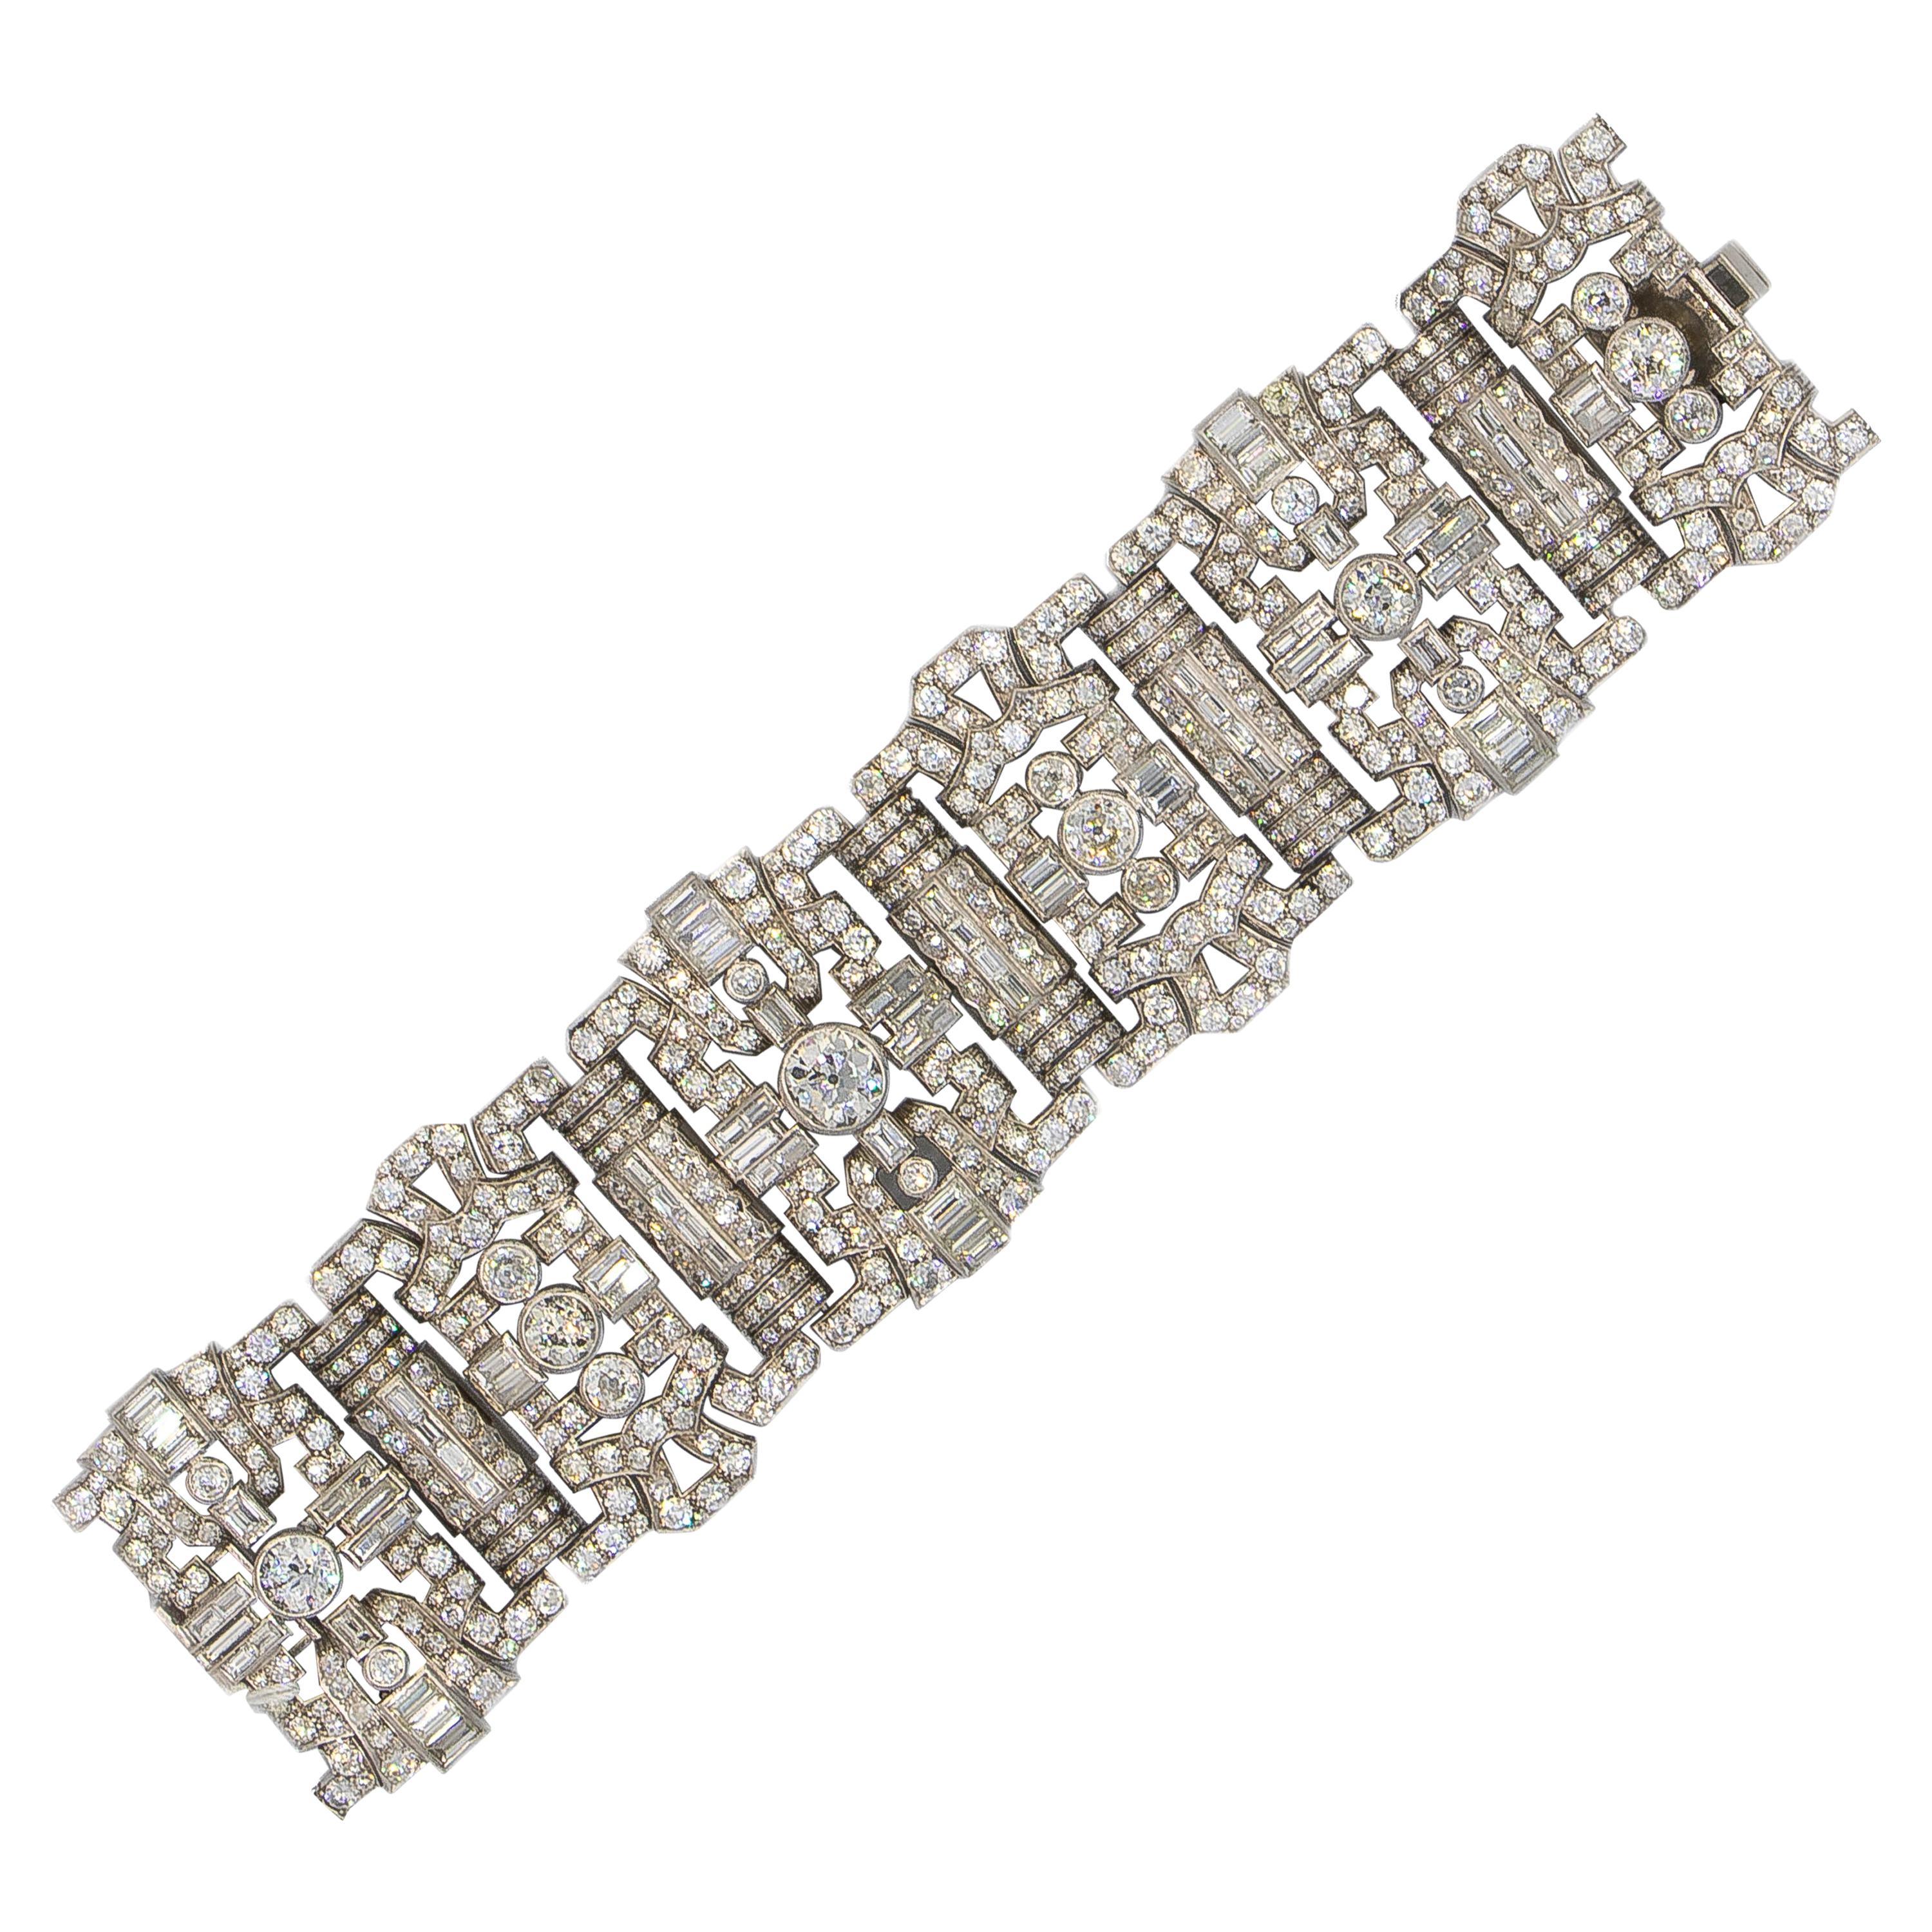 Important Diamonds Platinum Bracelet 48+ Carats Rare Antique 1920's Bracelet